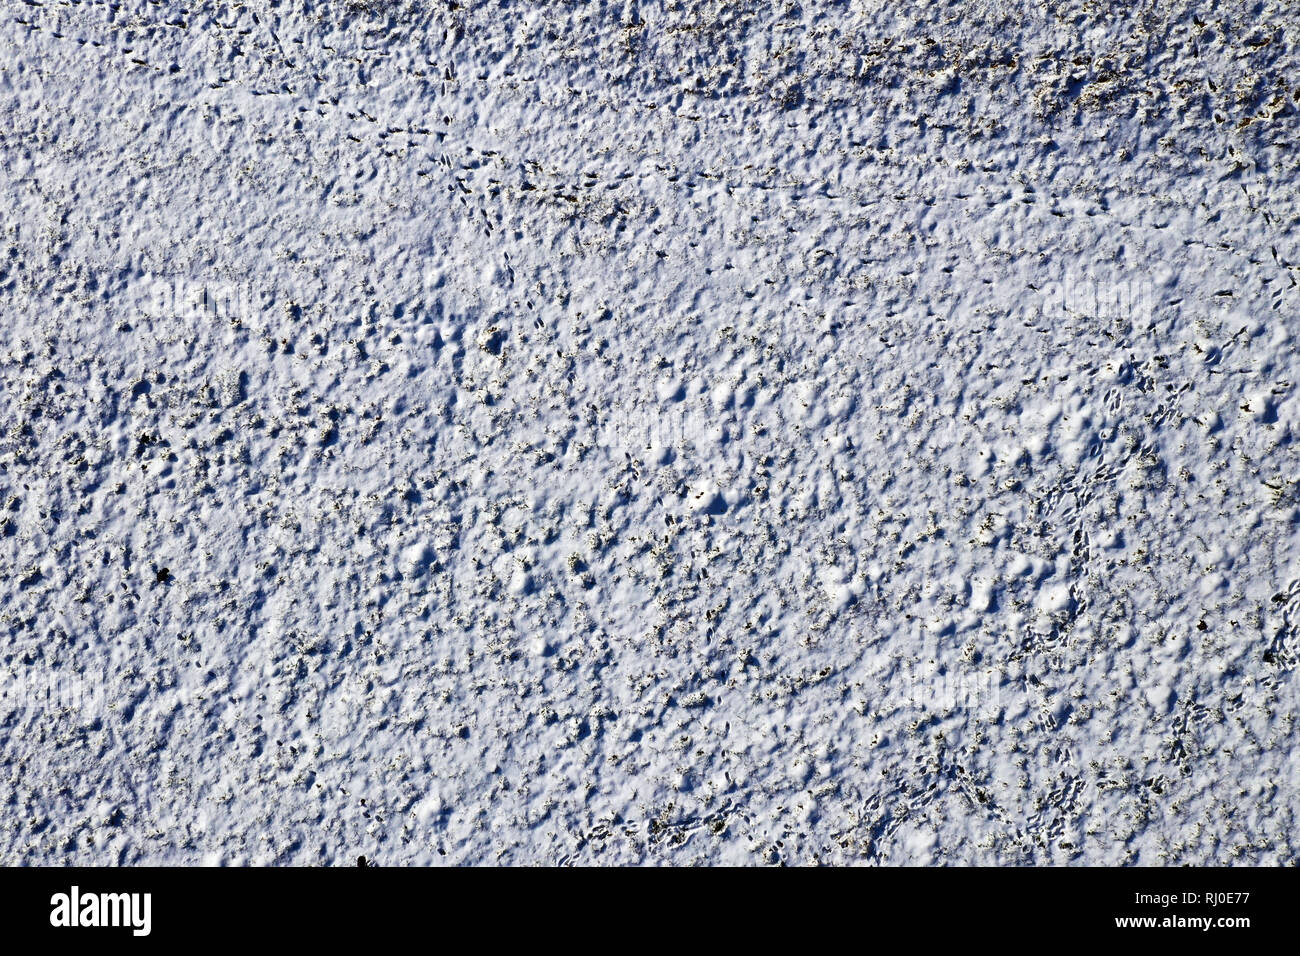 La texture blanche de neige sur terrain, vue de dessus, l'arrière-plan pour l'hiver Banque D'Images